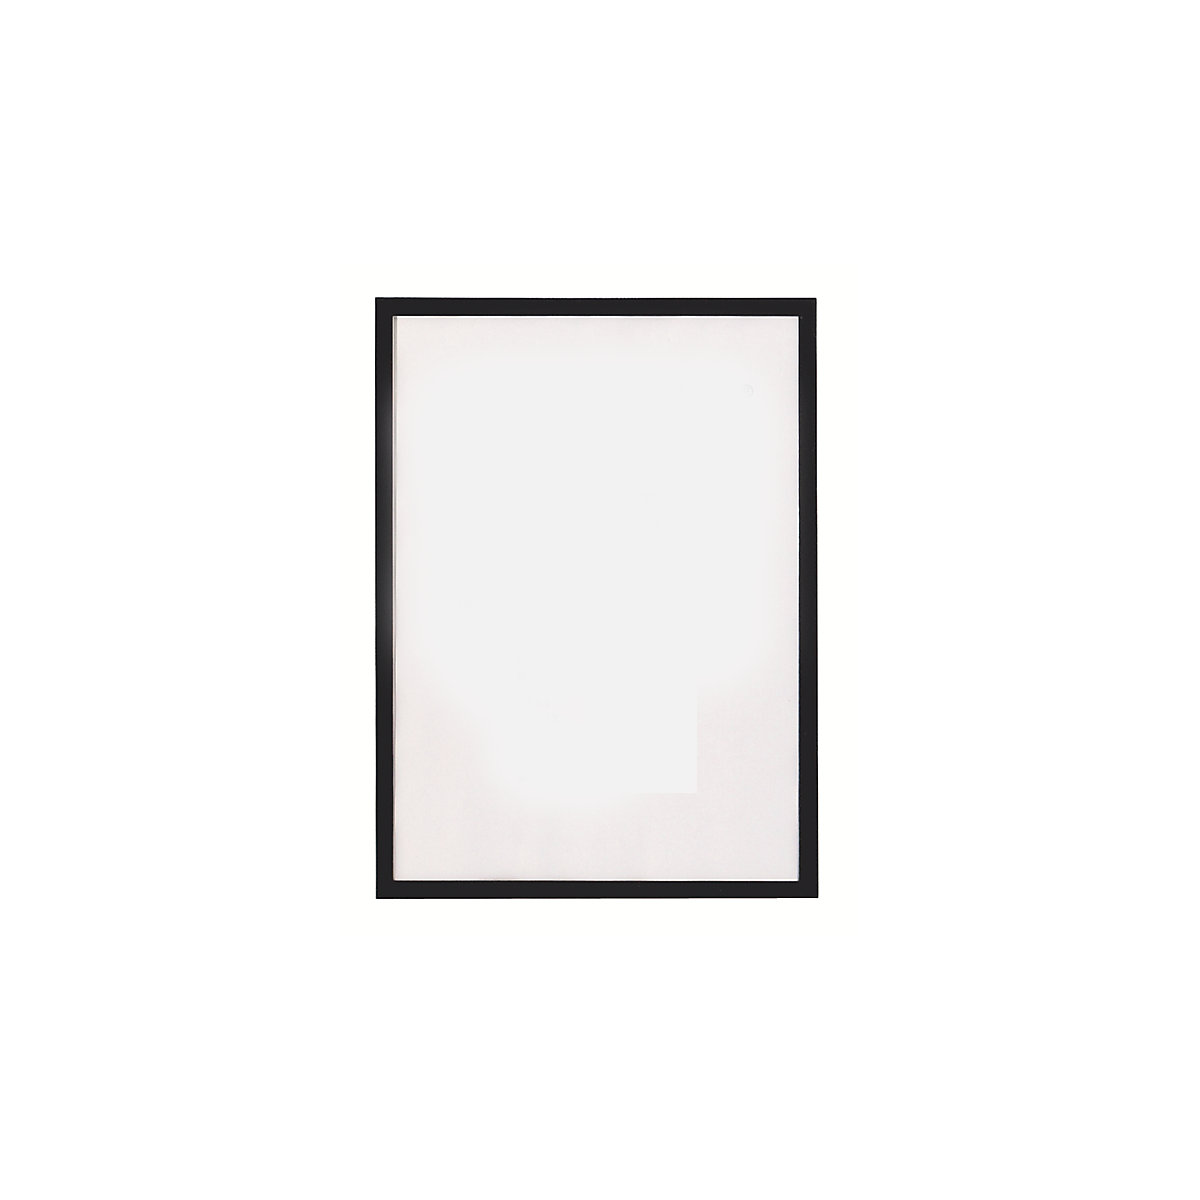 magnetofix vision panel – magnetoplan, format A3, pack of 5, black frame-7